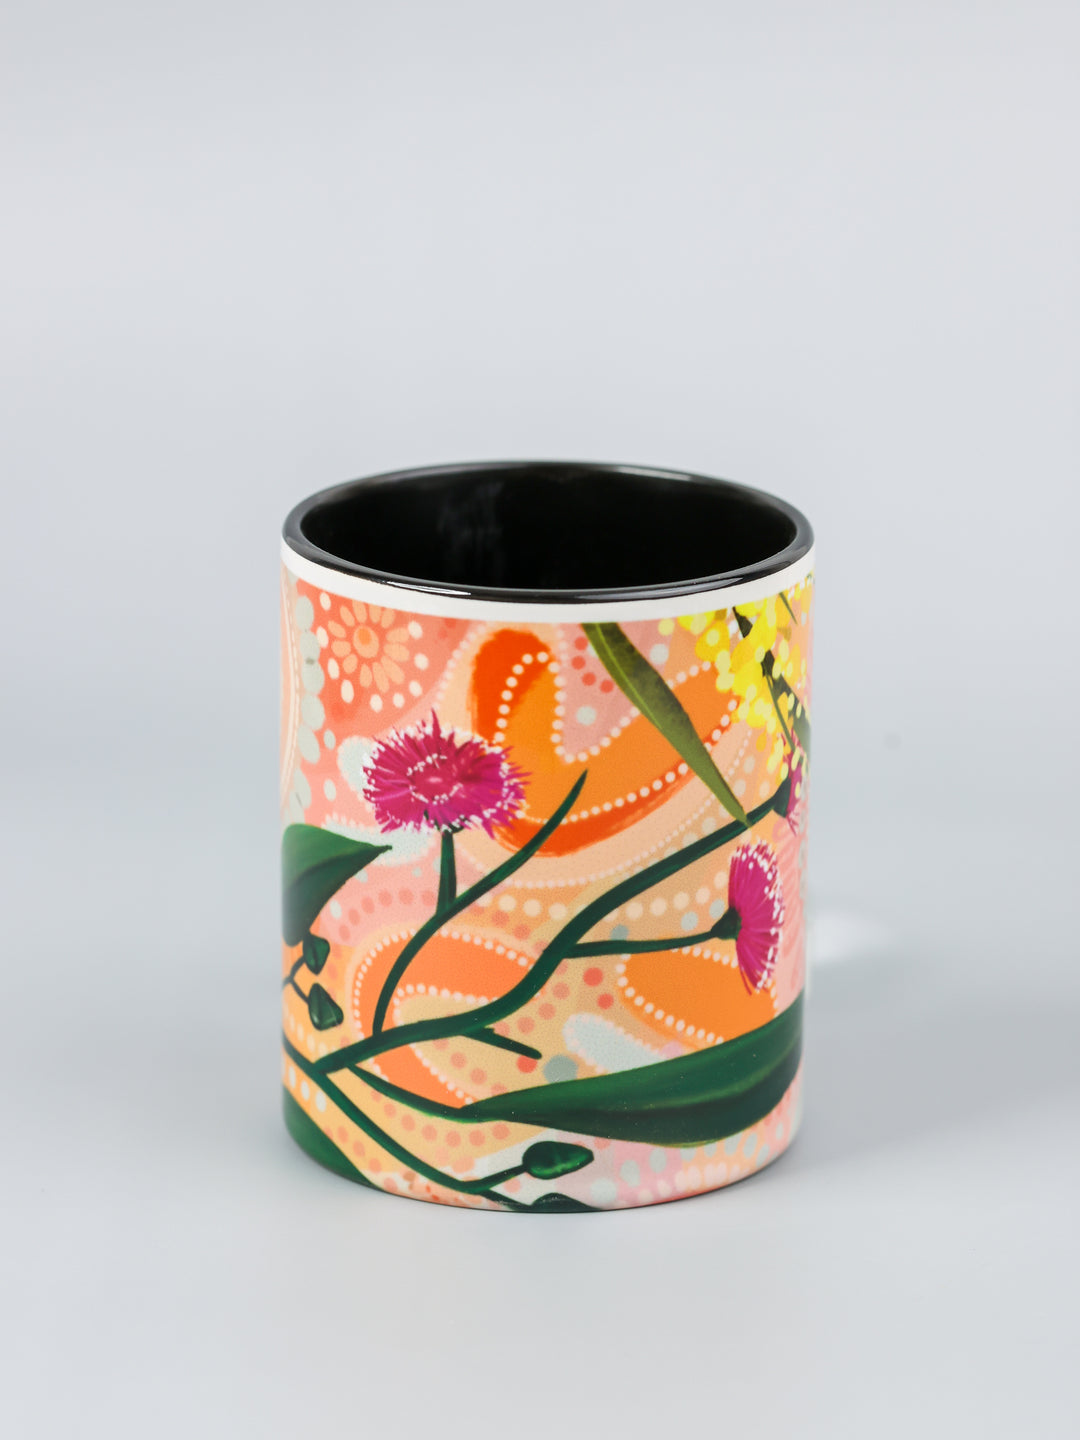 Healing by Bobbi Lockyer - Ceramic Mug